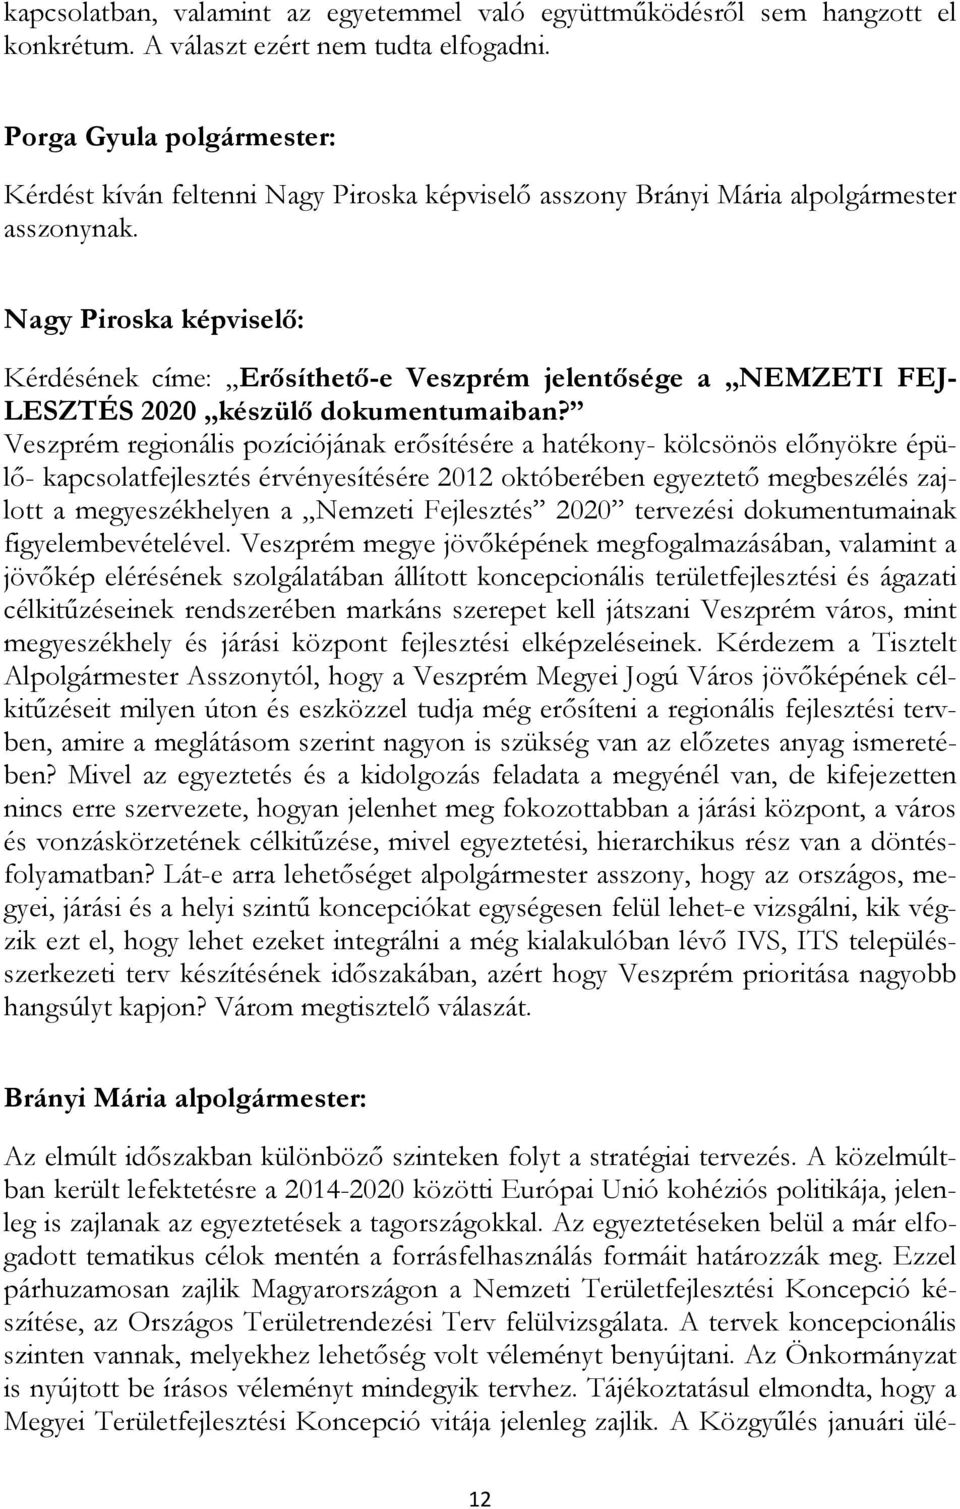 Nagy Piroska képviselı: Kérdésének címe: Erısíthetı-e Veszprém jelentısége a NEMZETI FEJ- LESZTÉS 2020 készülı dokumentumaiban?